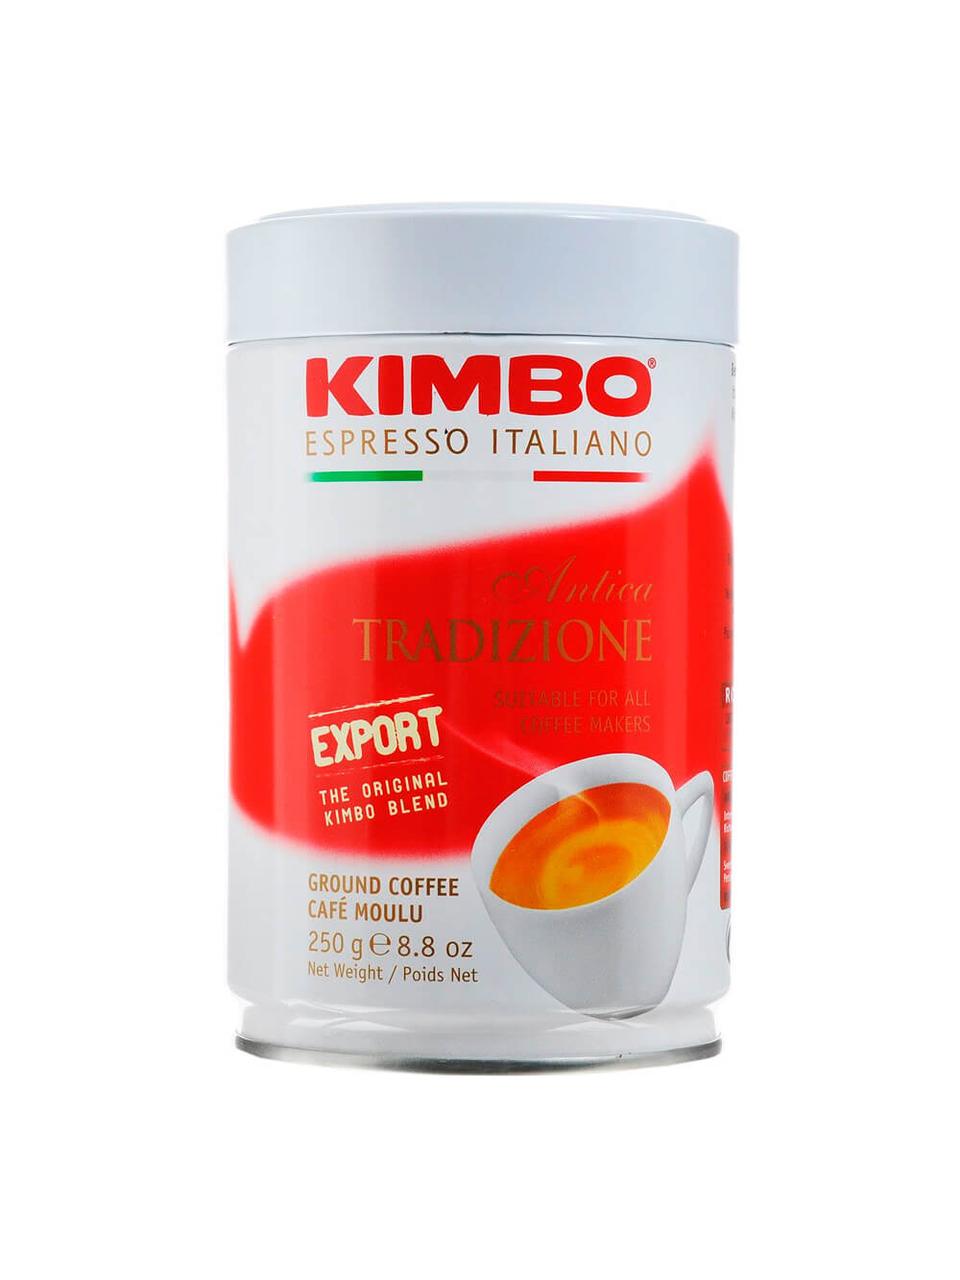 Кава мелена в банці KIMBO ANTICA TRADIZIONE, 250 грамів., Італія